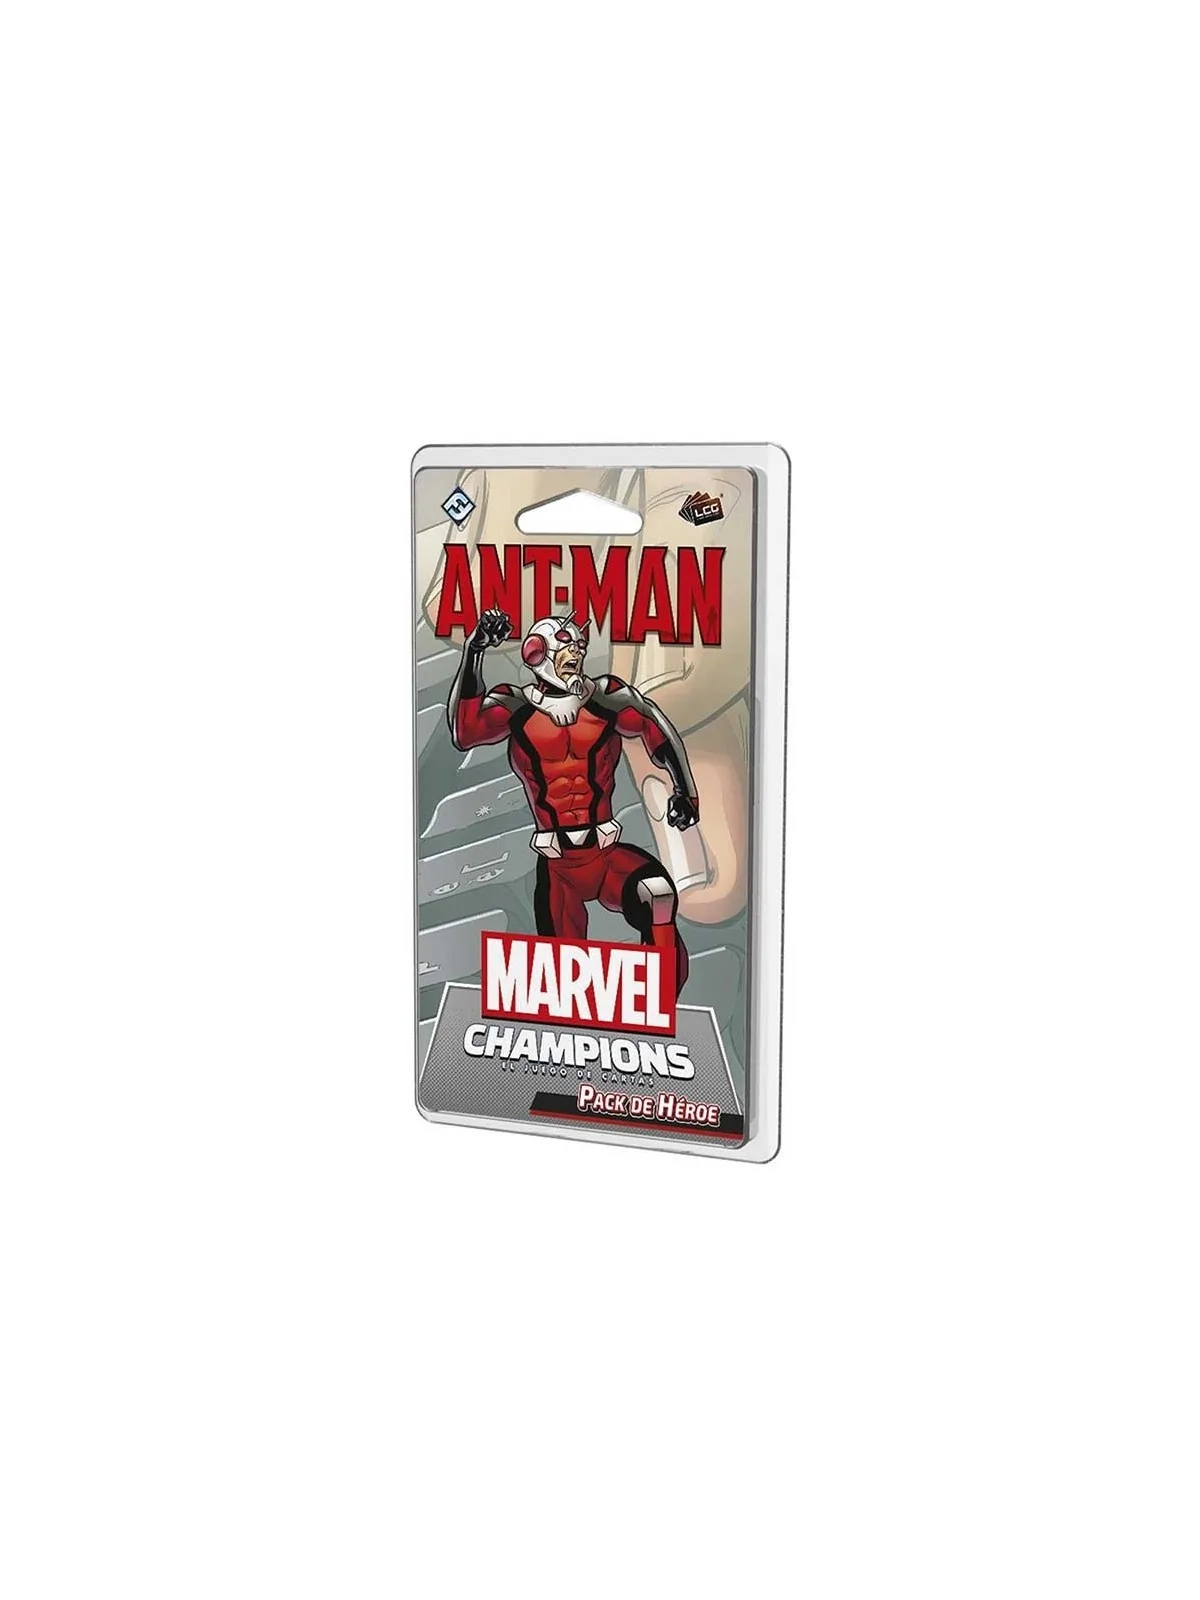 Comprar Marvel Champions: Ant-Man barato al mejor precio 15,29 € de Fa